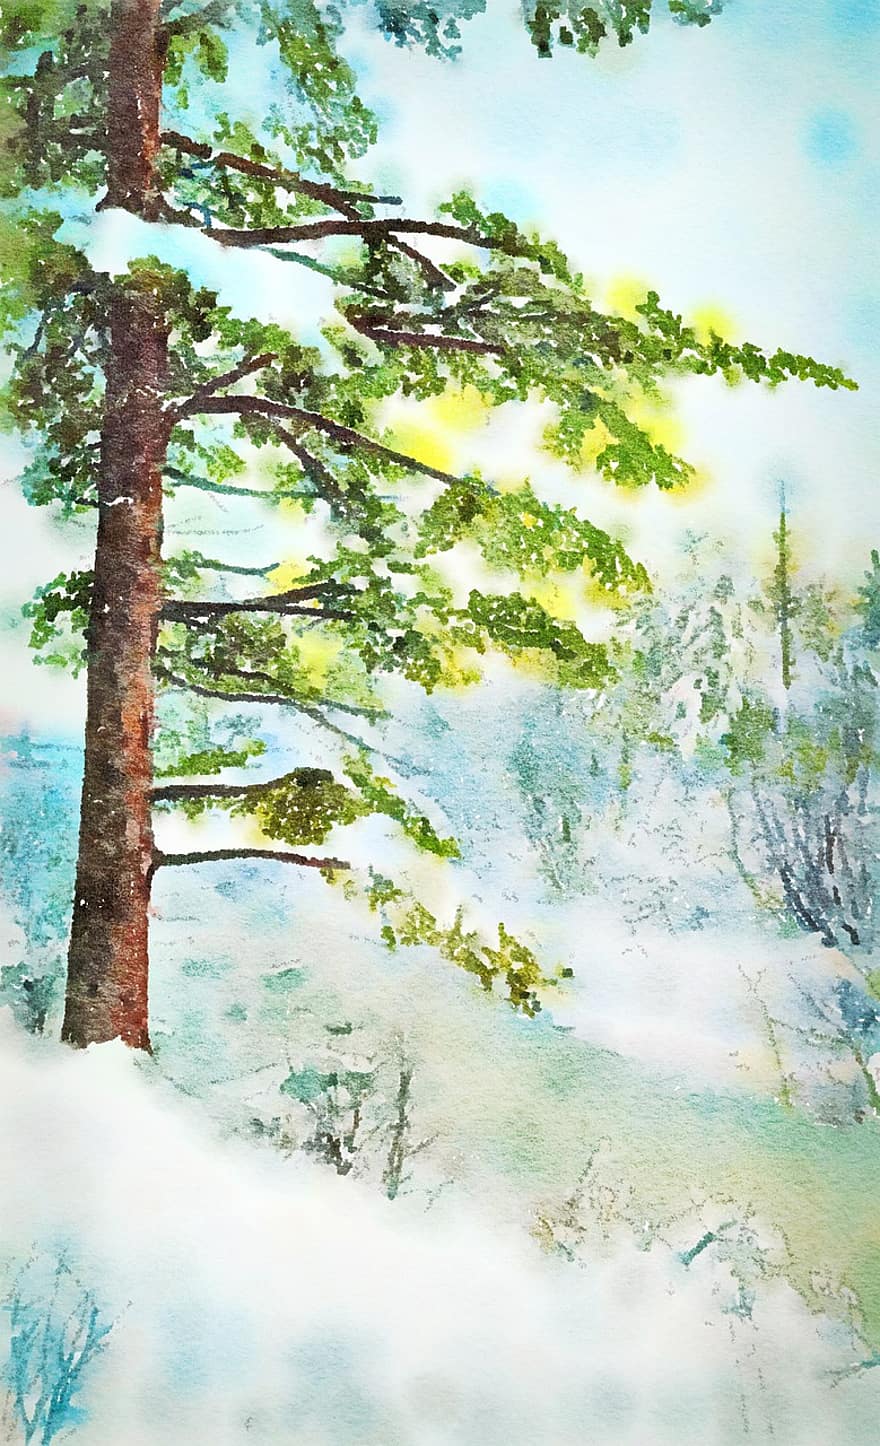 las, drzewa, lesisty teren, śnieg, śnieżny, zimowy, lód, zimno, Natura, Boże Narodzenie, opady śniegu